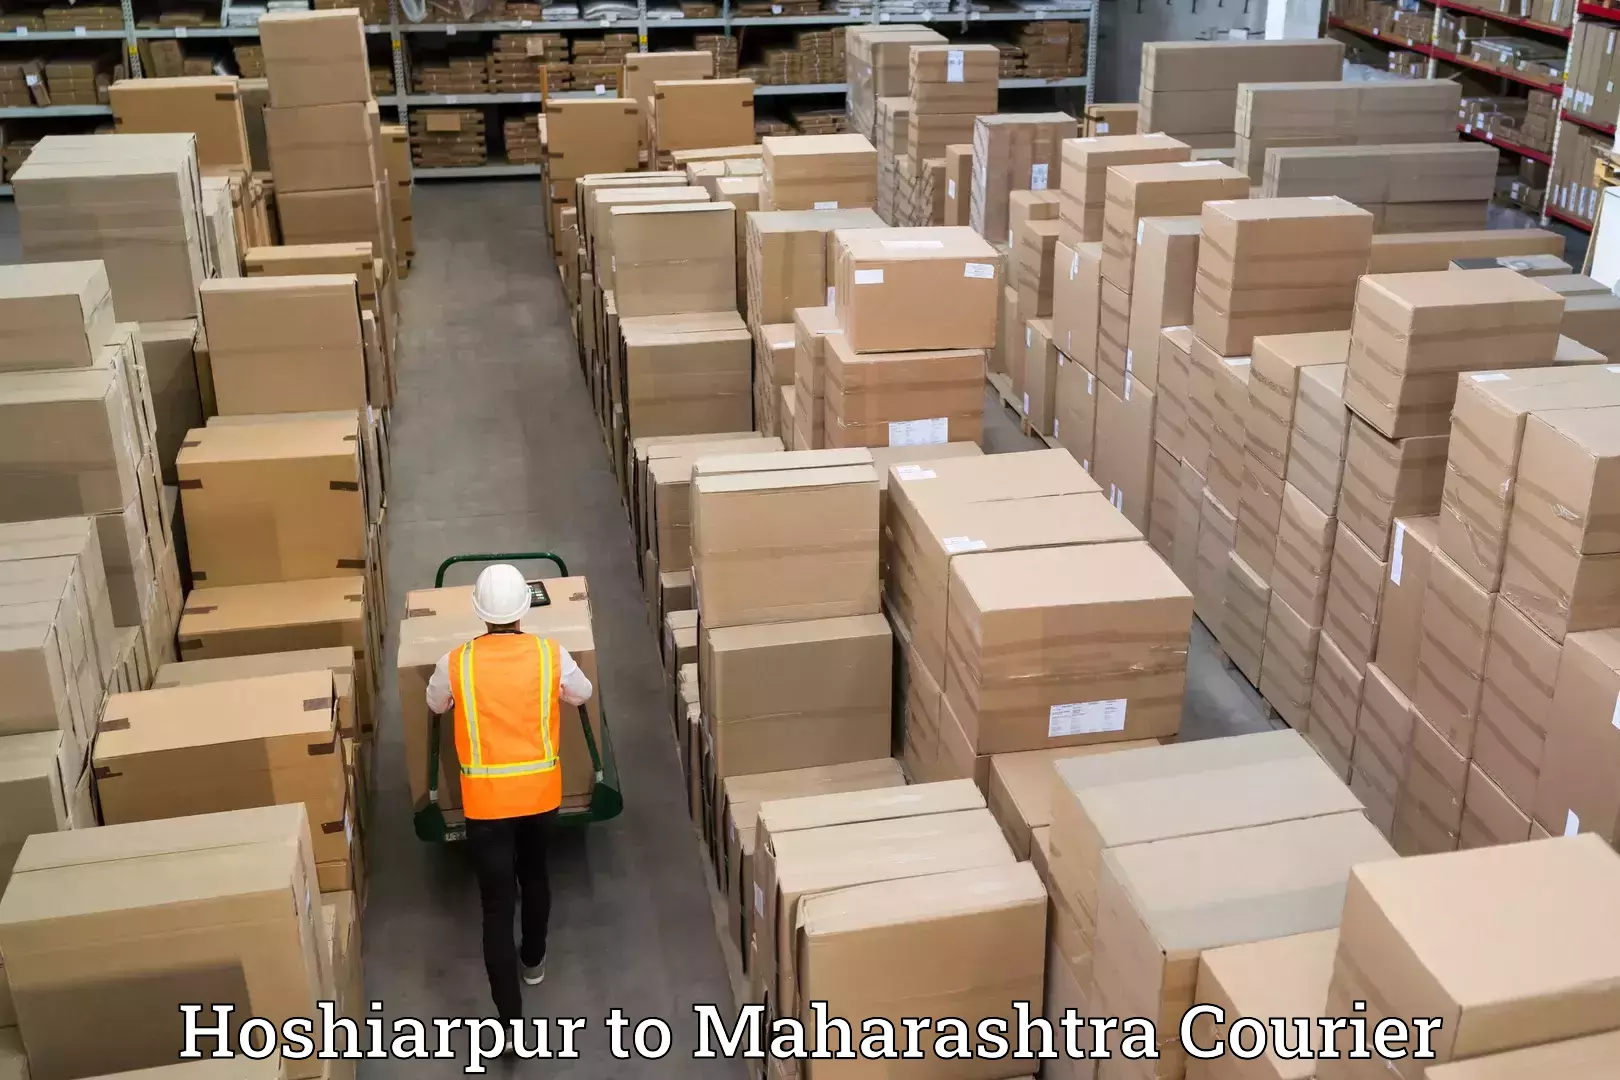 Furniture transport company Hoshiarpur to Maharashtra